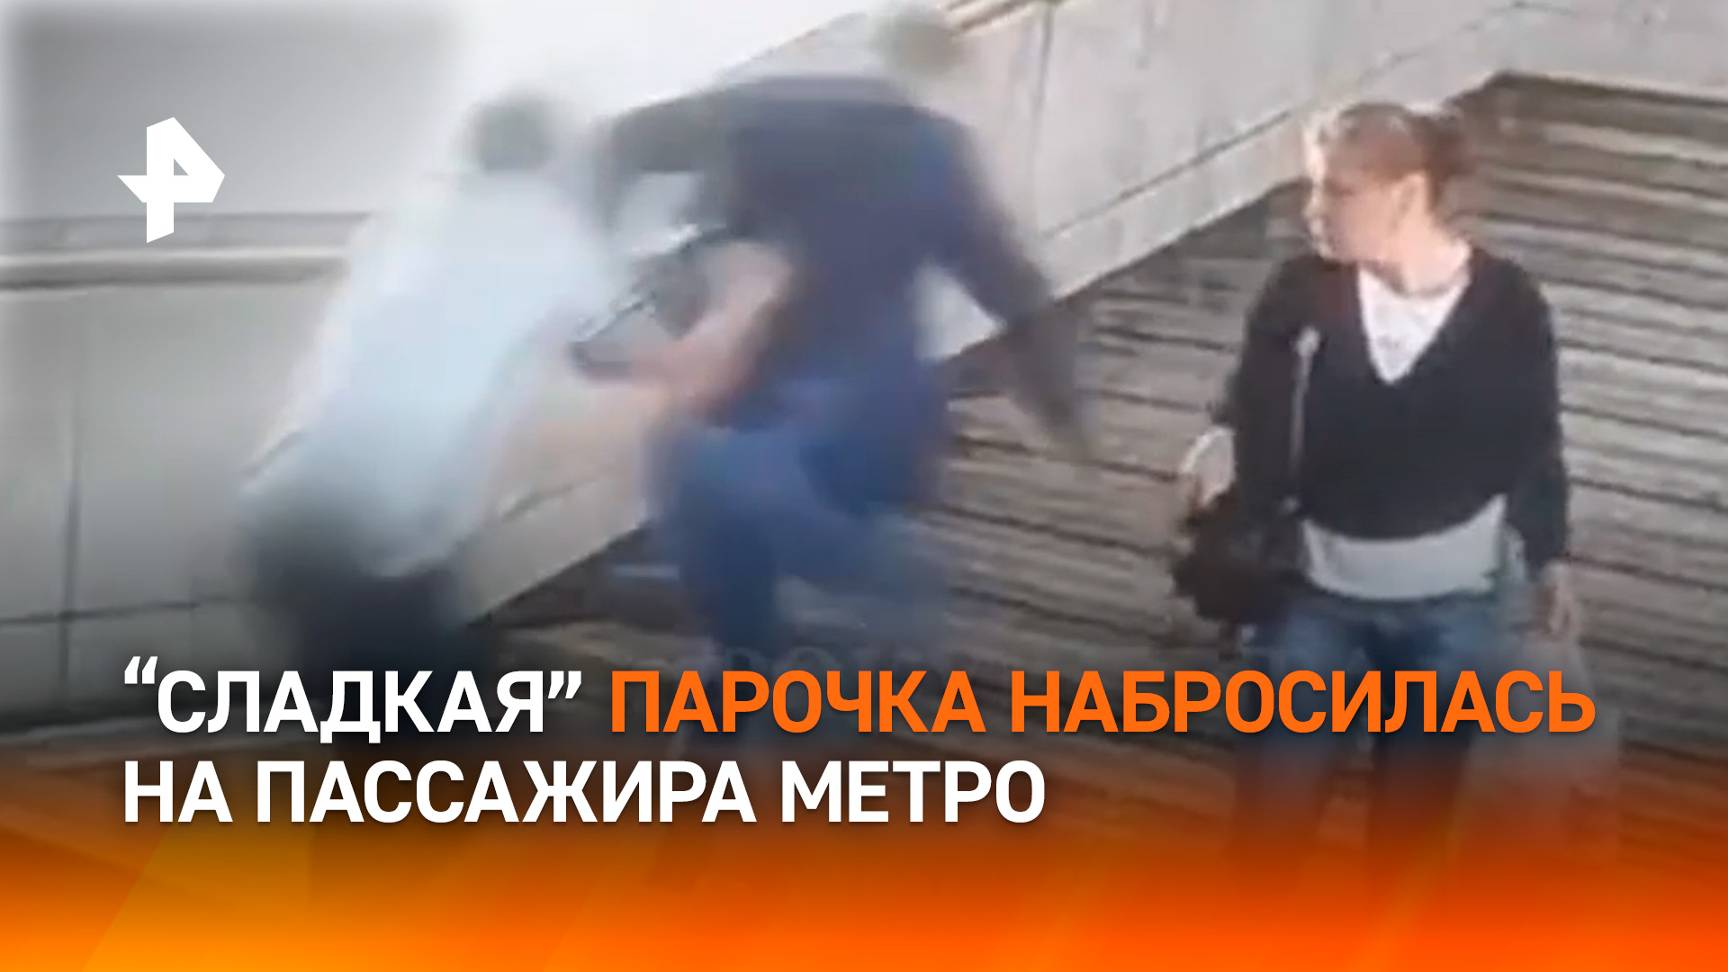 Сумкой с алкоголем по голове: буйная парочка избила пассажира метро в Москве